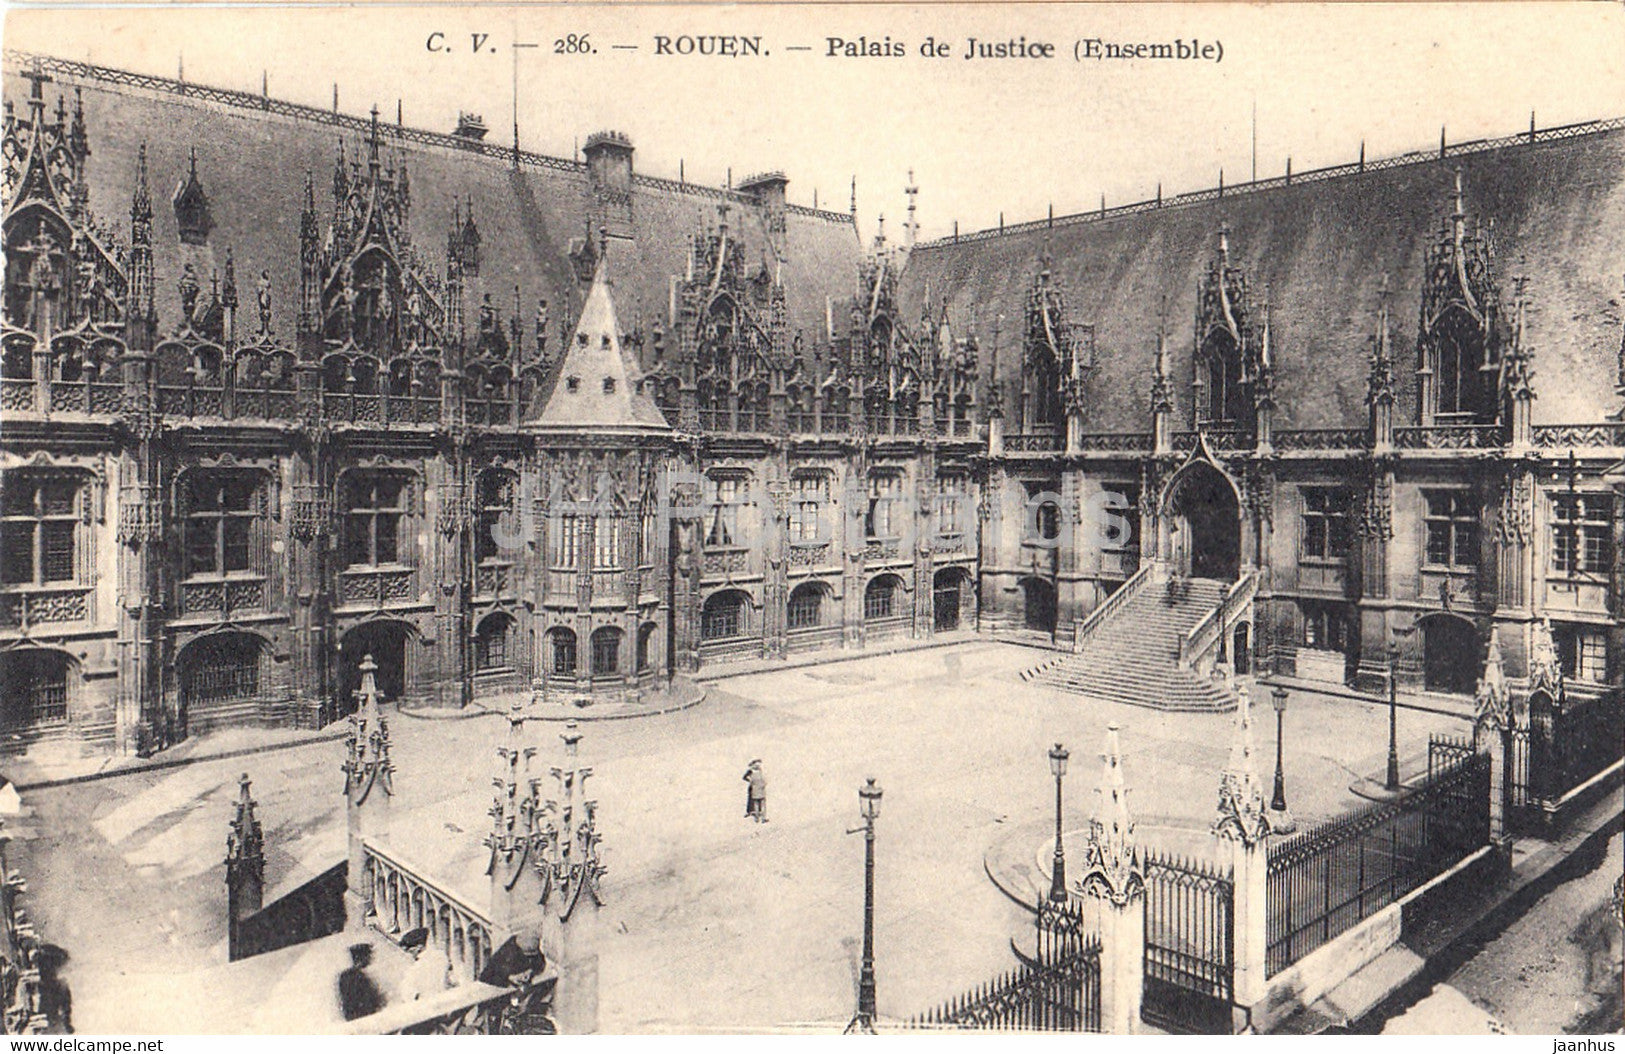 Rouen - Palais de Justice - ensemble - old postcard - France - unused - JH Postcards